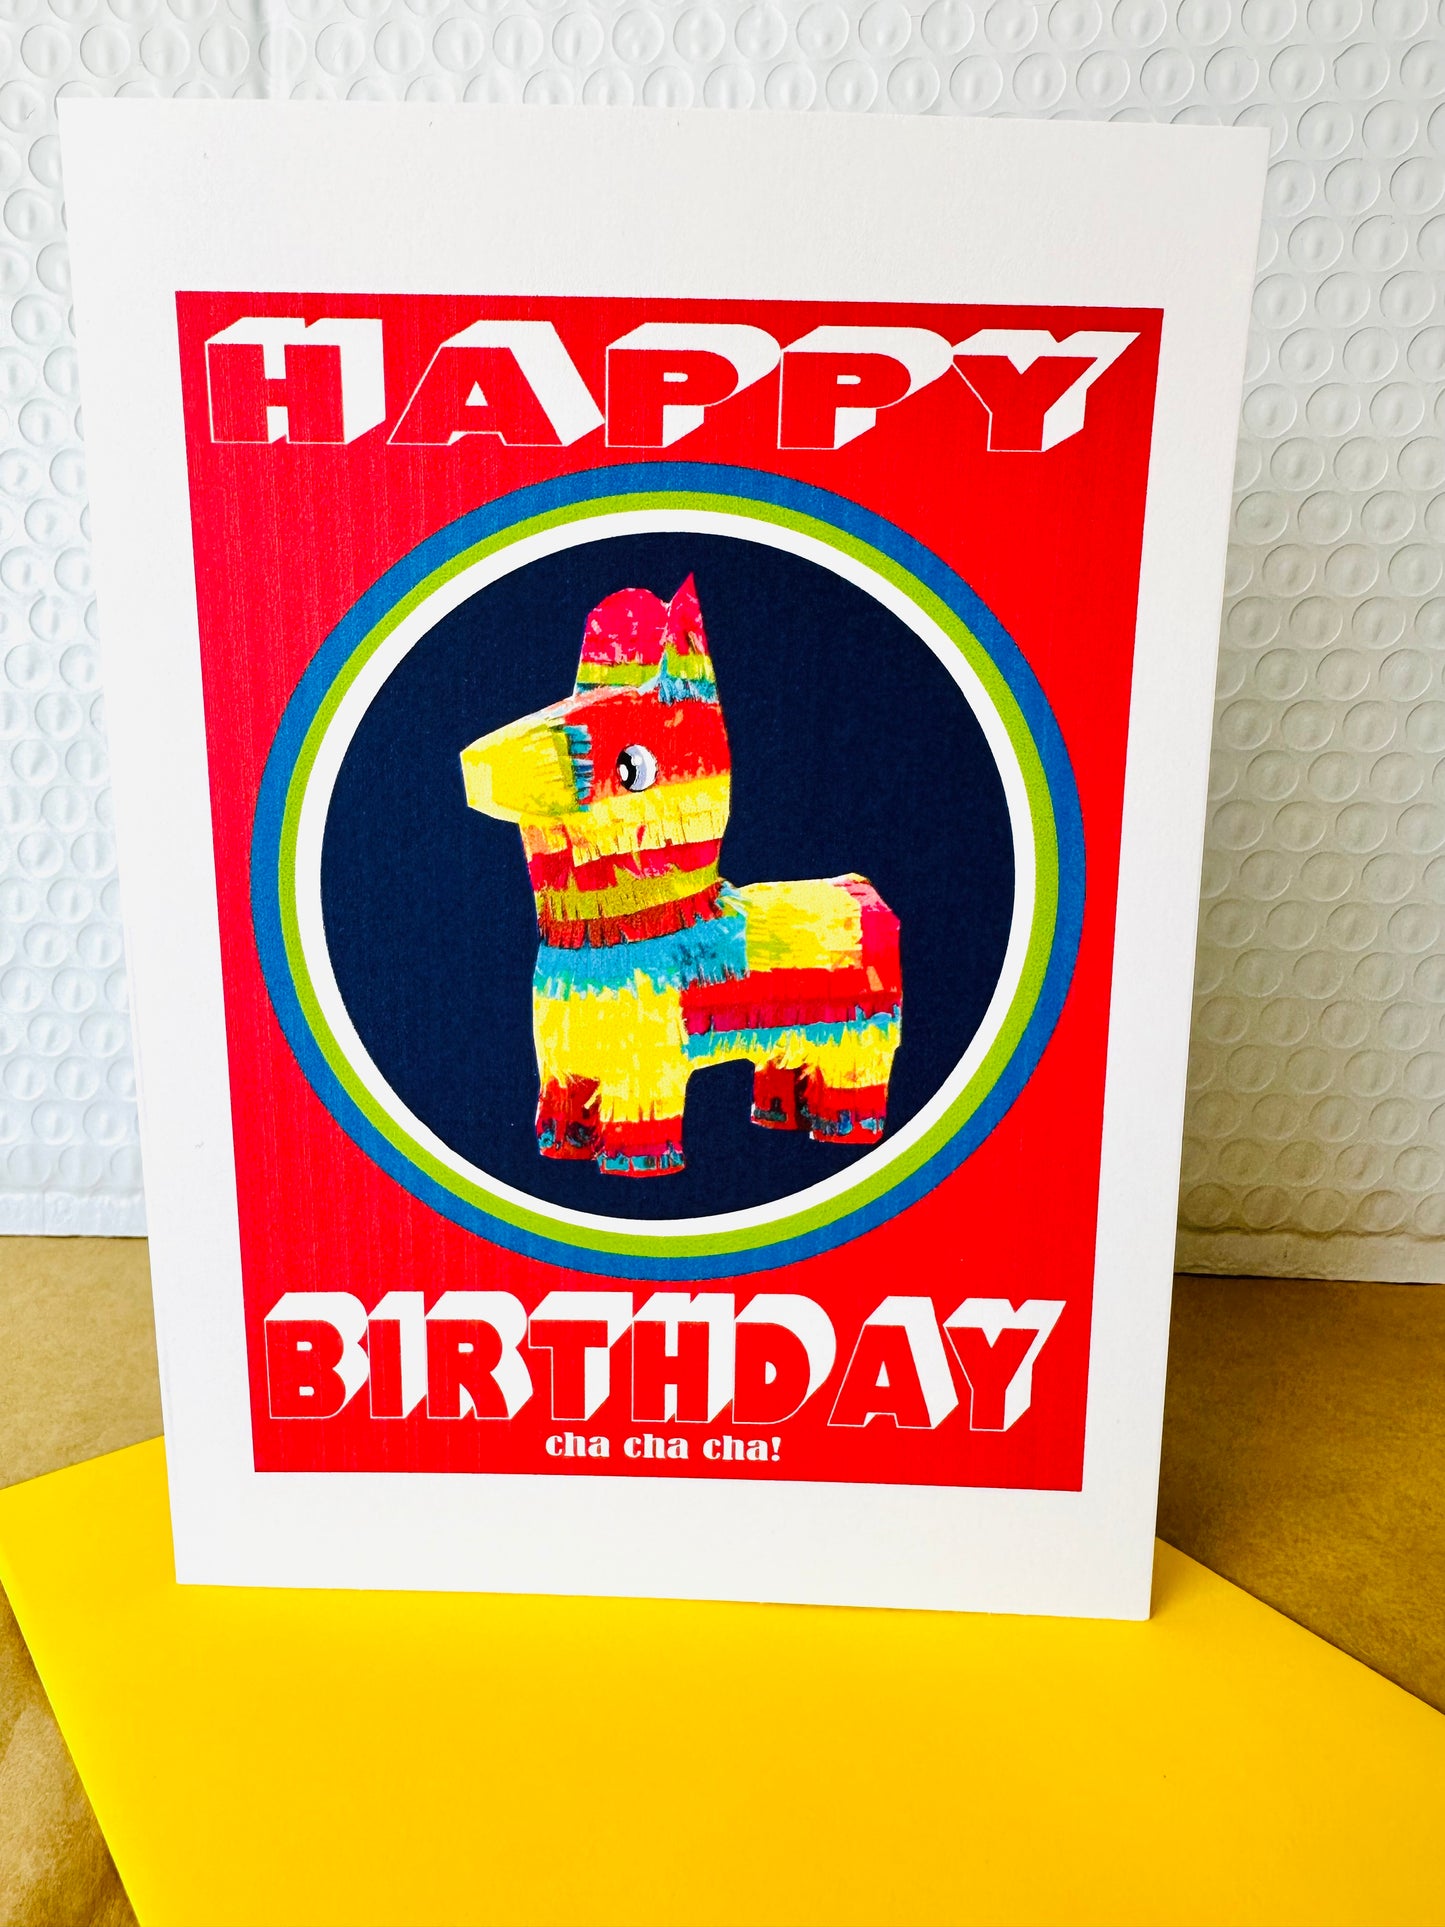 Happy Birthday Cha Cha Cha & Happy Birthday Rockstar 5x7 Piñata greeting card